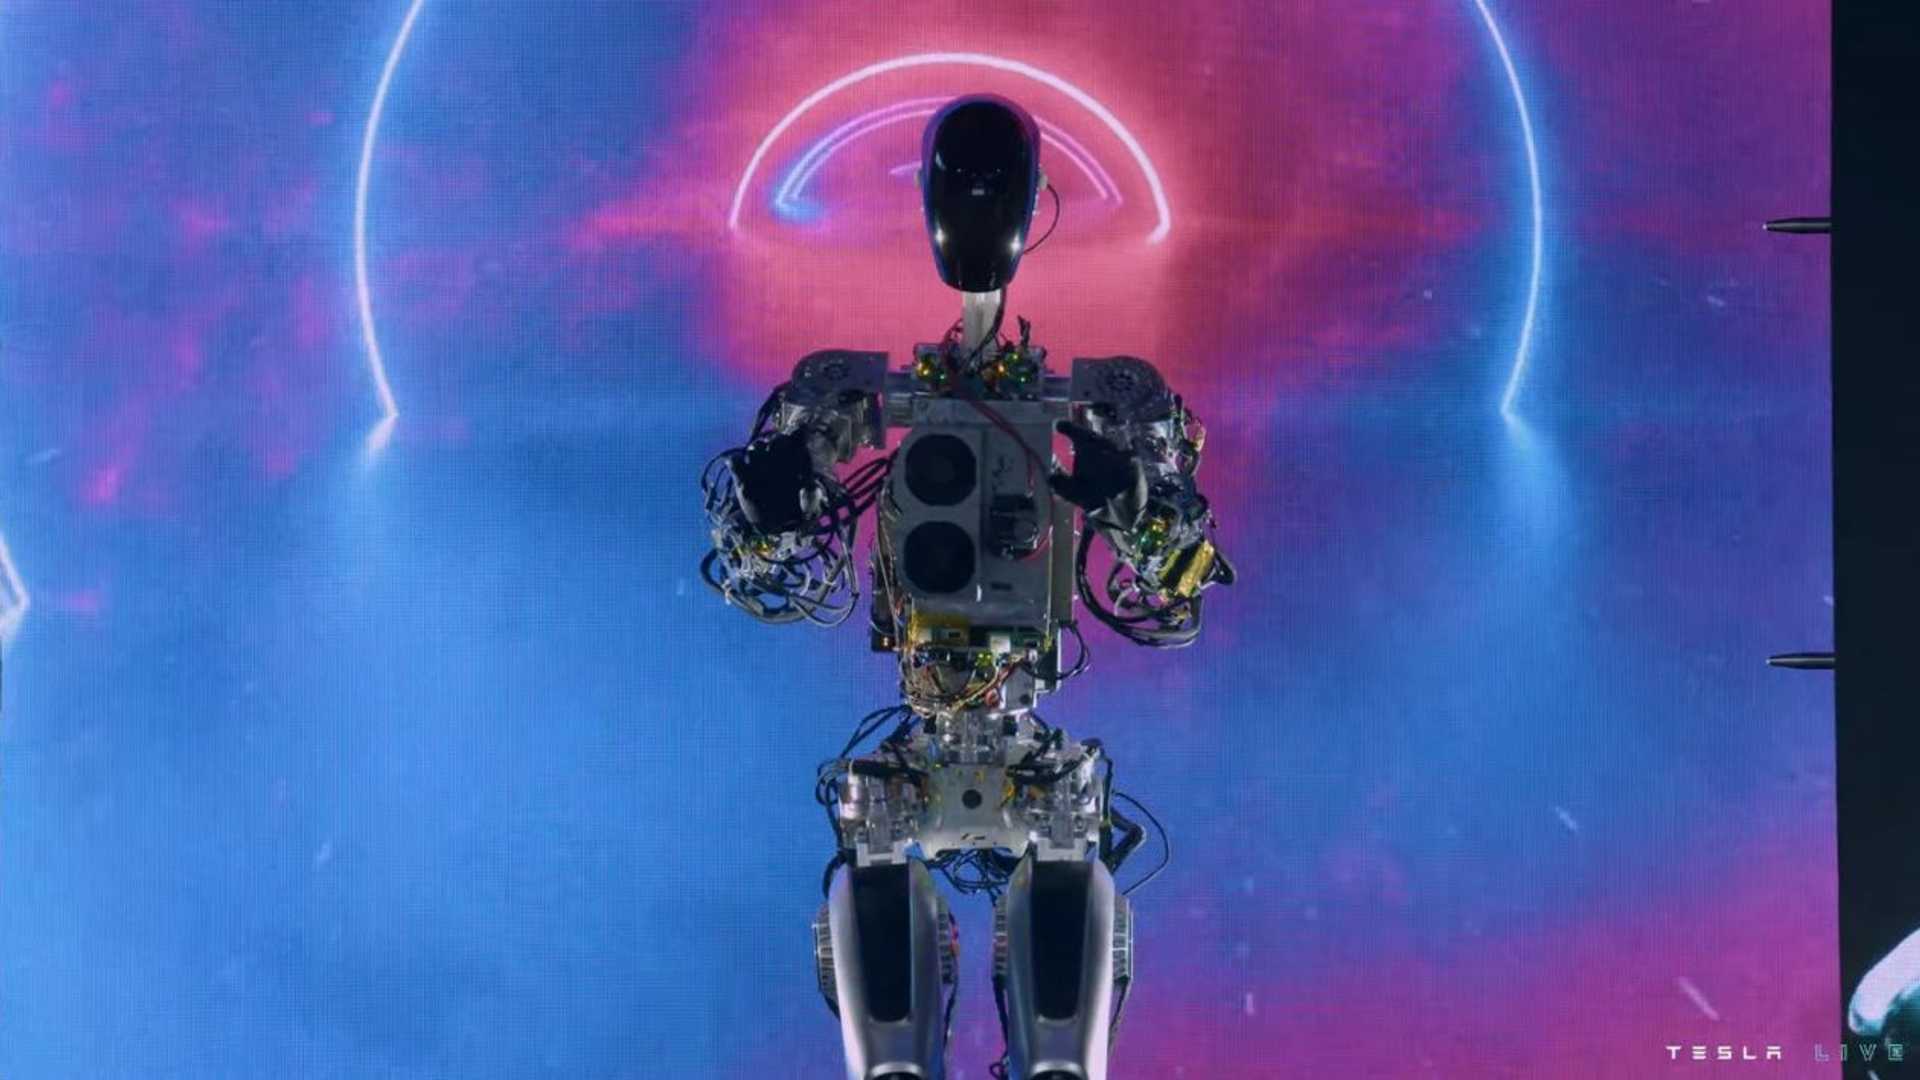 1-ربات انسان نمای تسلا با قیمت حدود ۲۰ هزار دلار رونمایی شد